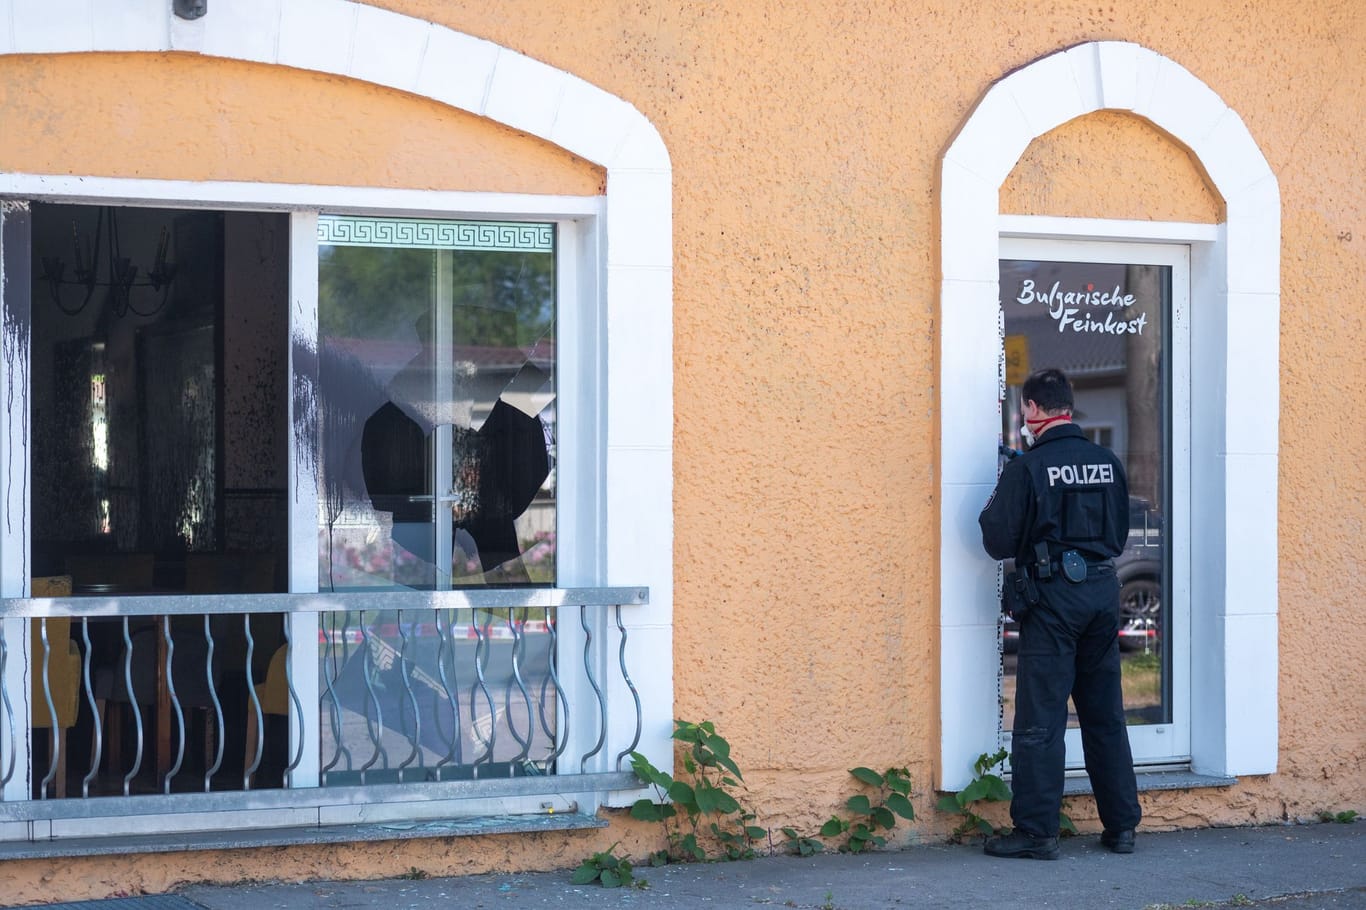 Ein Polizist sichert an einer Tür von einem Restaurant in Hoppegarten Spuren: In dem Restaurant wurde eine Scheibe eingeschlagen, die Fassade beschmiert und Buttersäure verteilt.